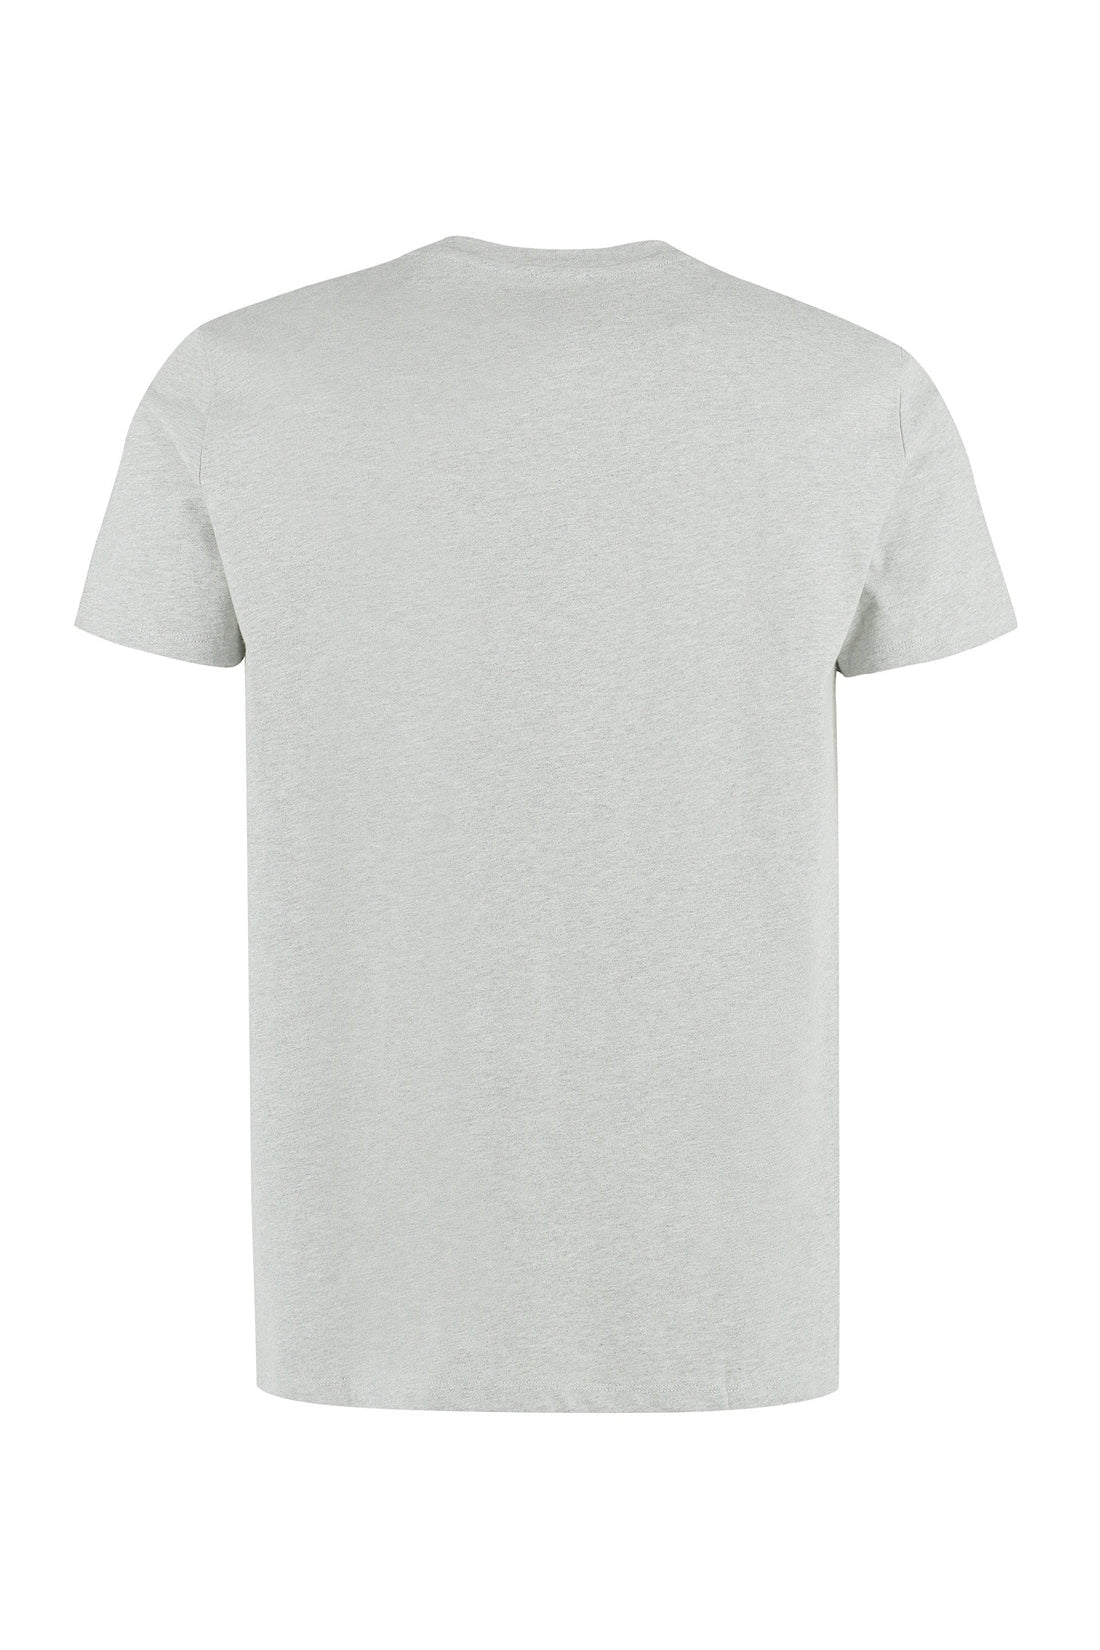 A.P.C.-OUTLET-SALE-Cotton crew-neck T-shirt-ARCHIVIST